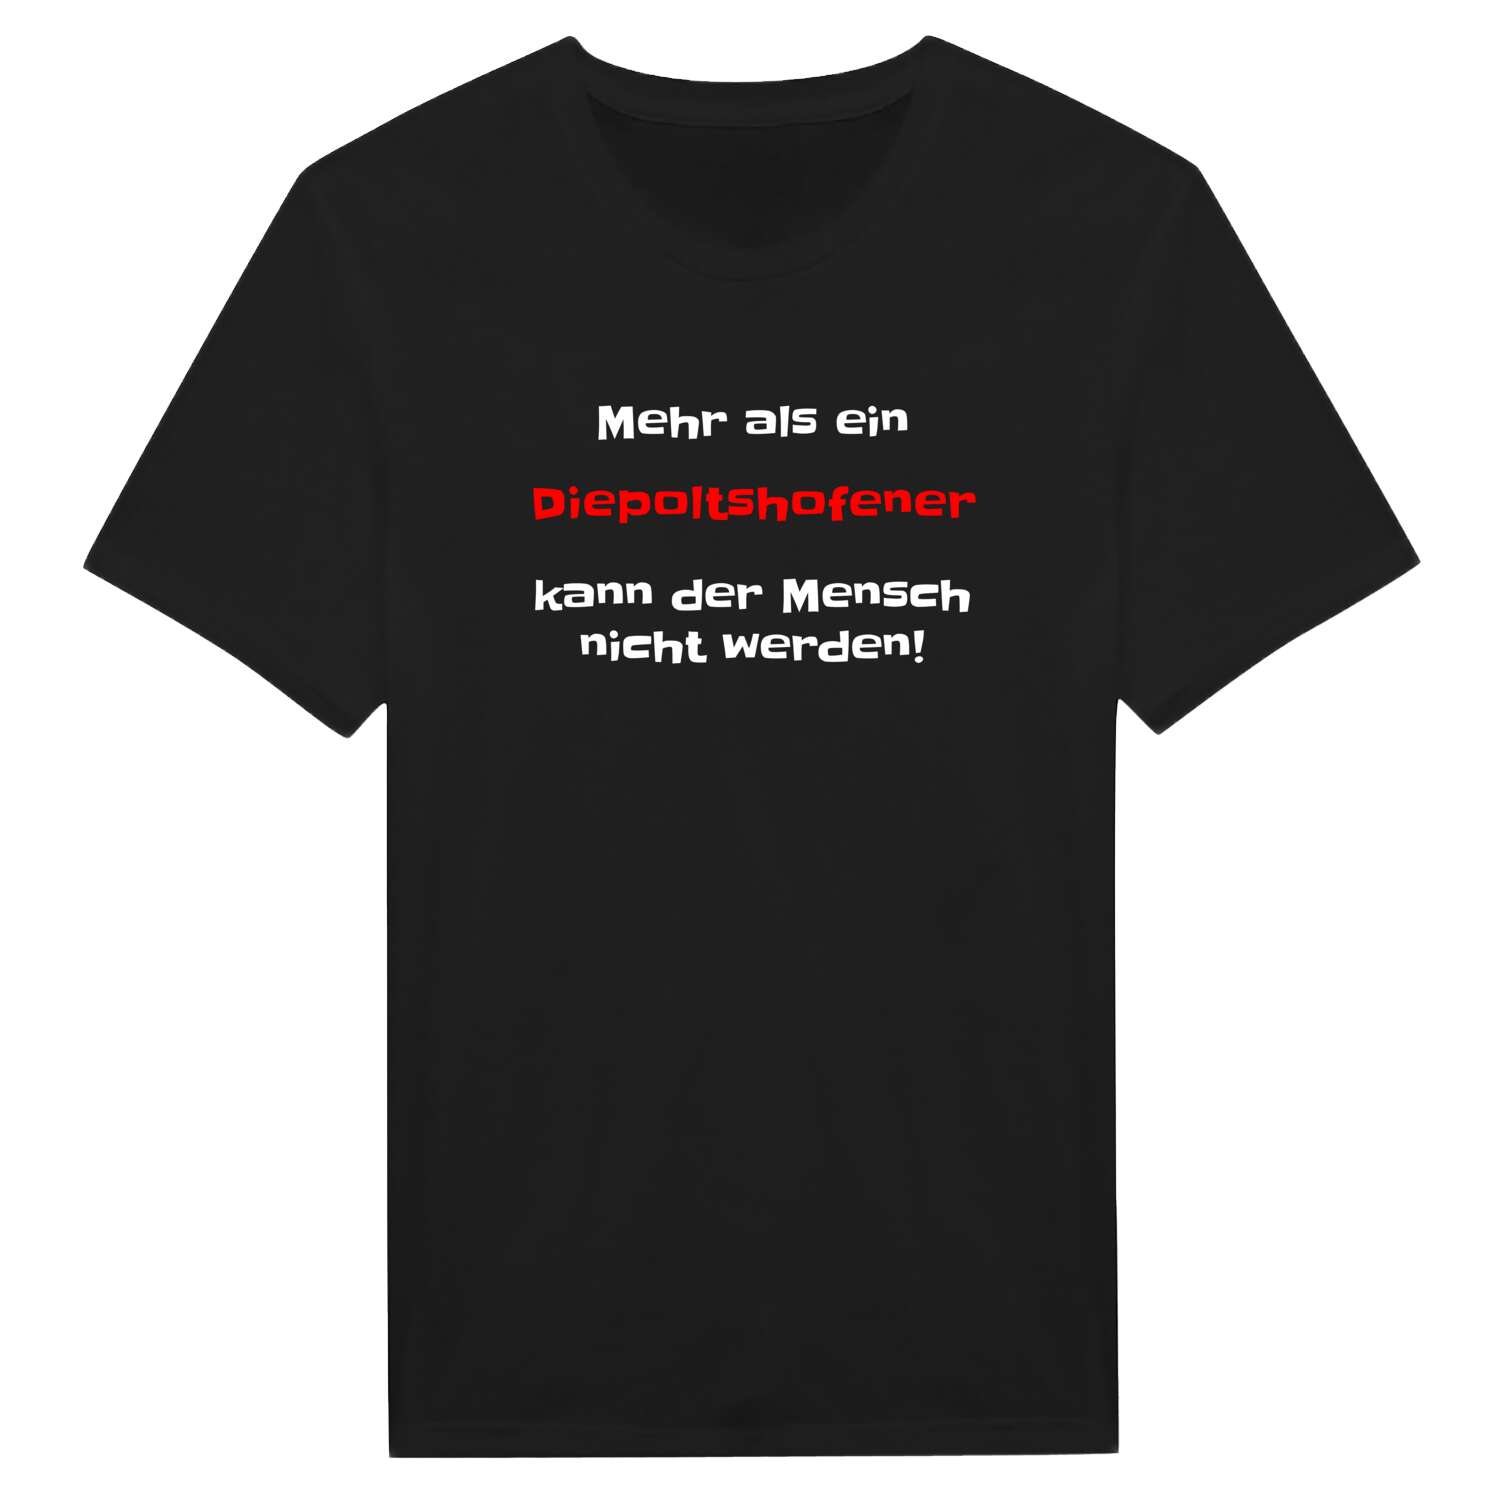 Diepoltshofen T-Shirt »Mehr als ein«